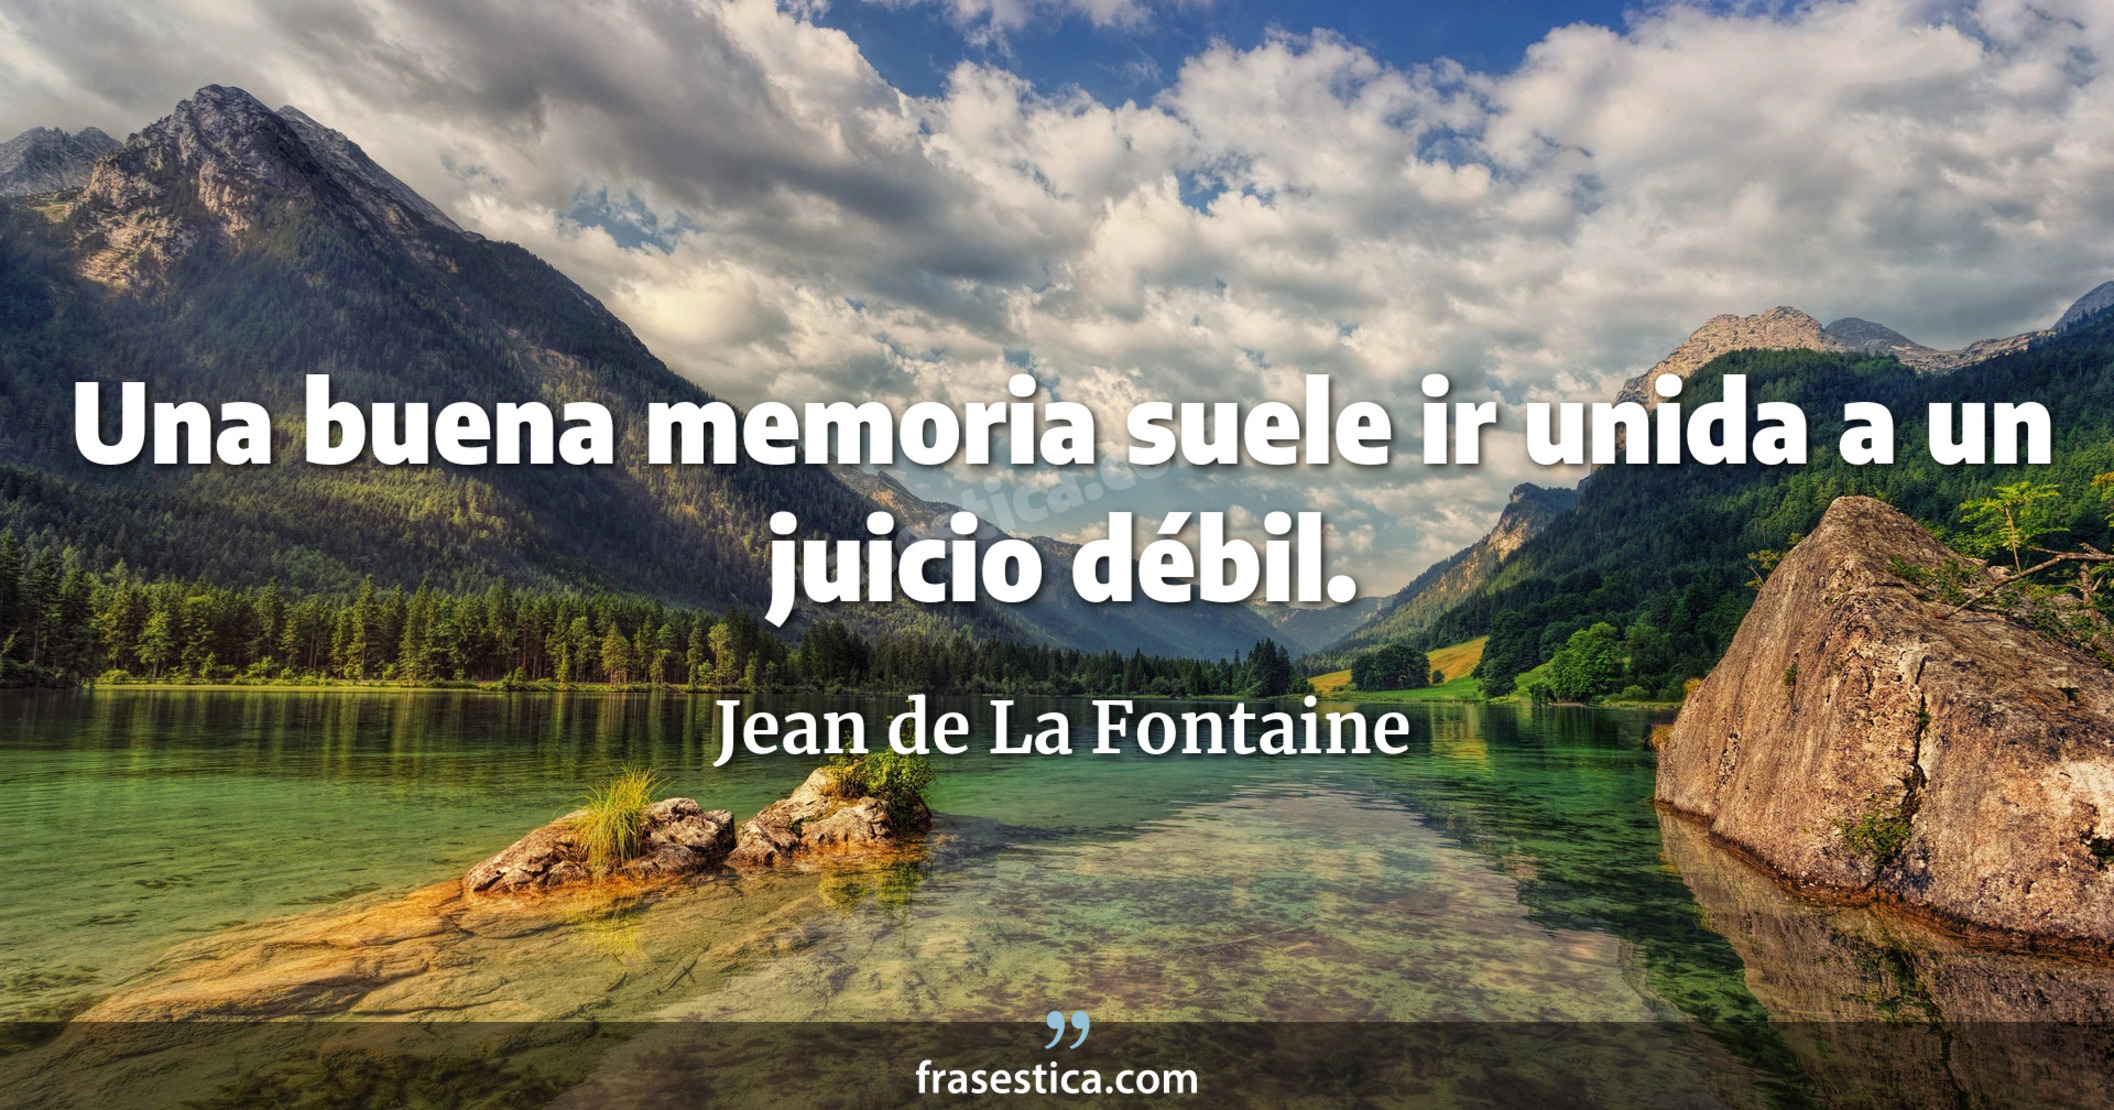 Una buena memoria suele ir unida a un juicio débil. - Jean de La Fontaine